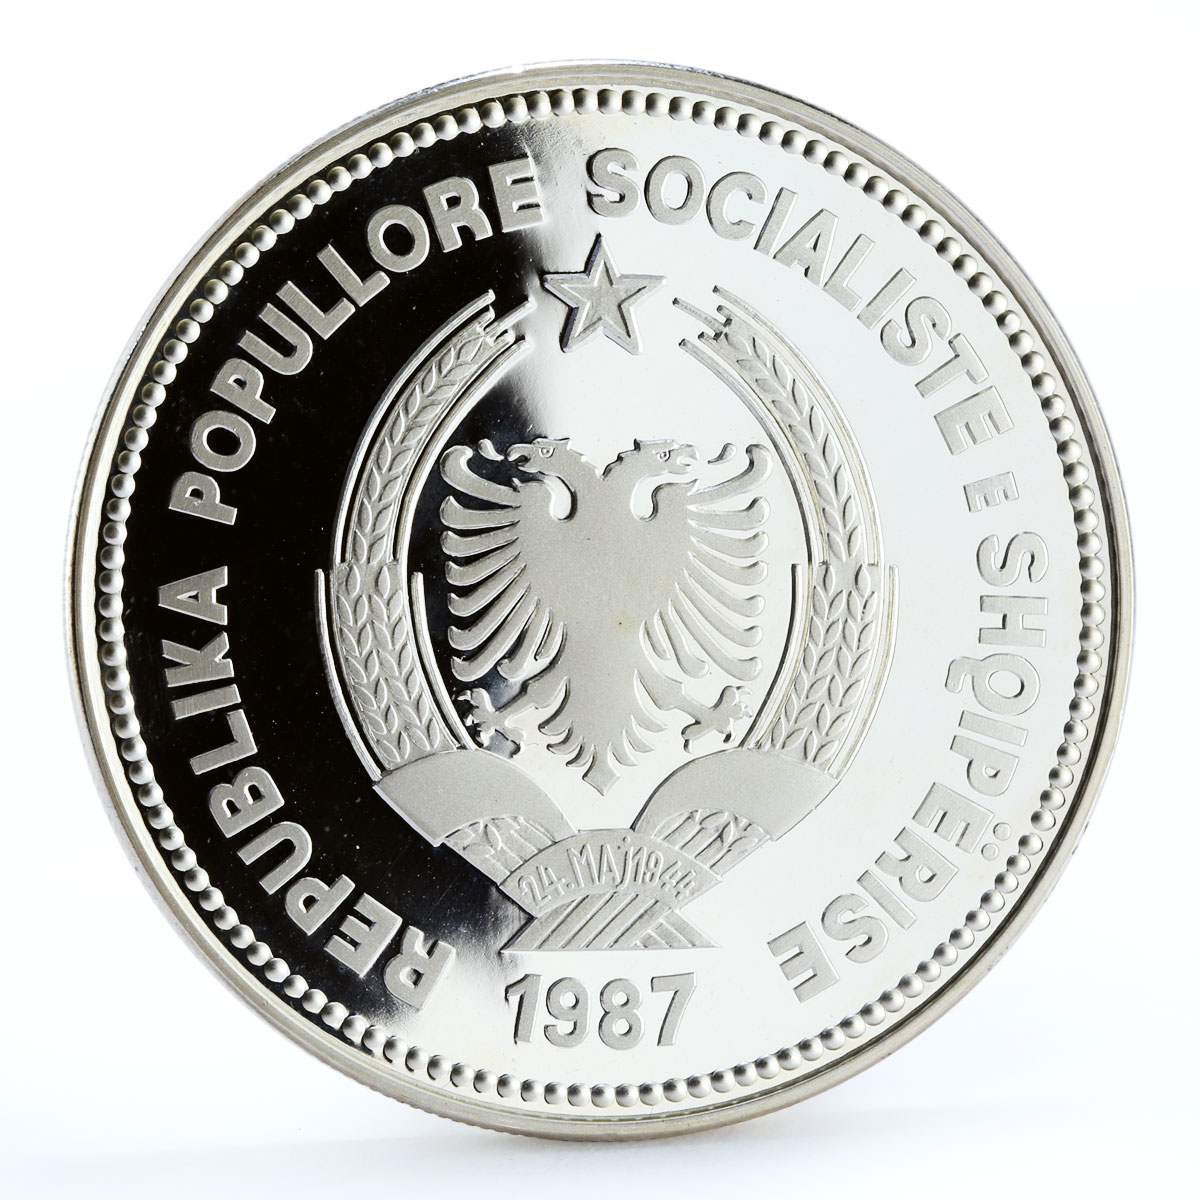 Albania 50 leke Seaport of Durazzo Ship Clipper proof silver coin 1987